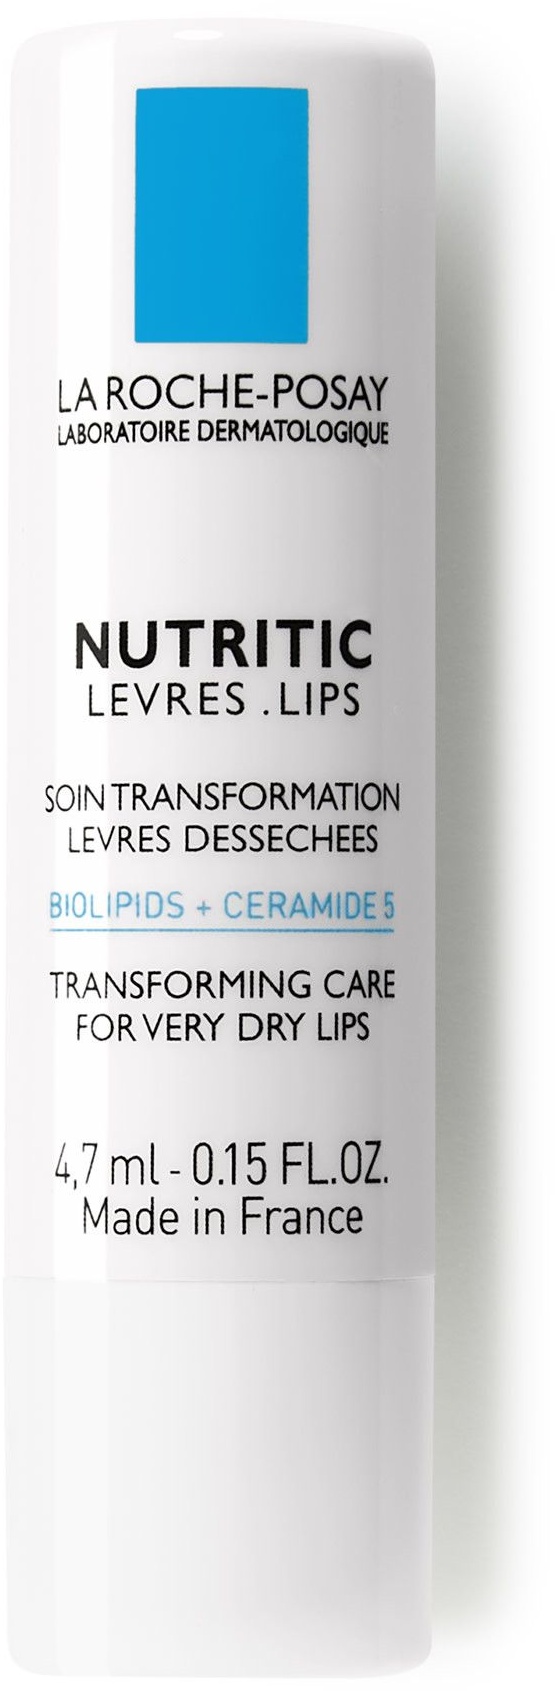 LA ROCHE POSAY Nutritic Soin Transformation Lèvres Dessechées 5 ml rouge(s) à lèvres